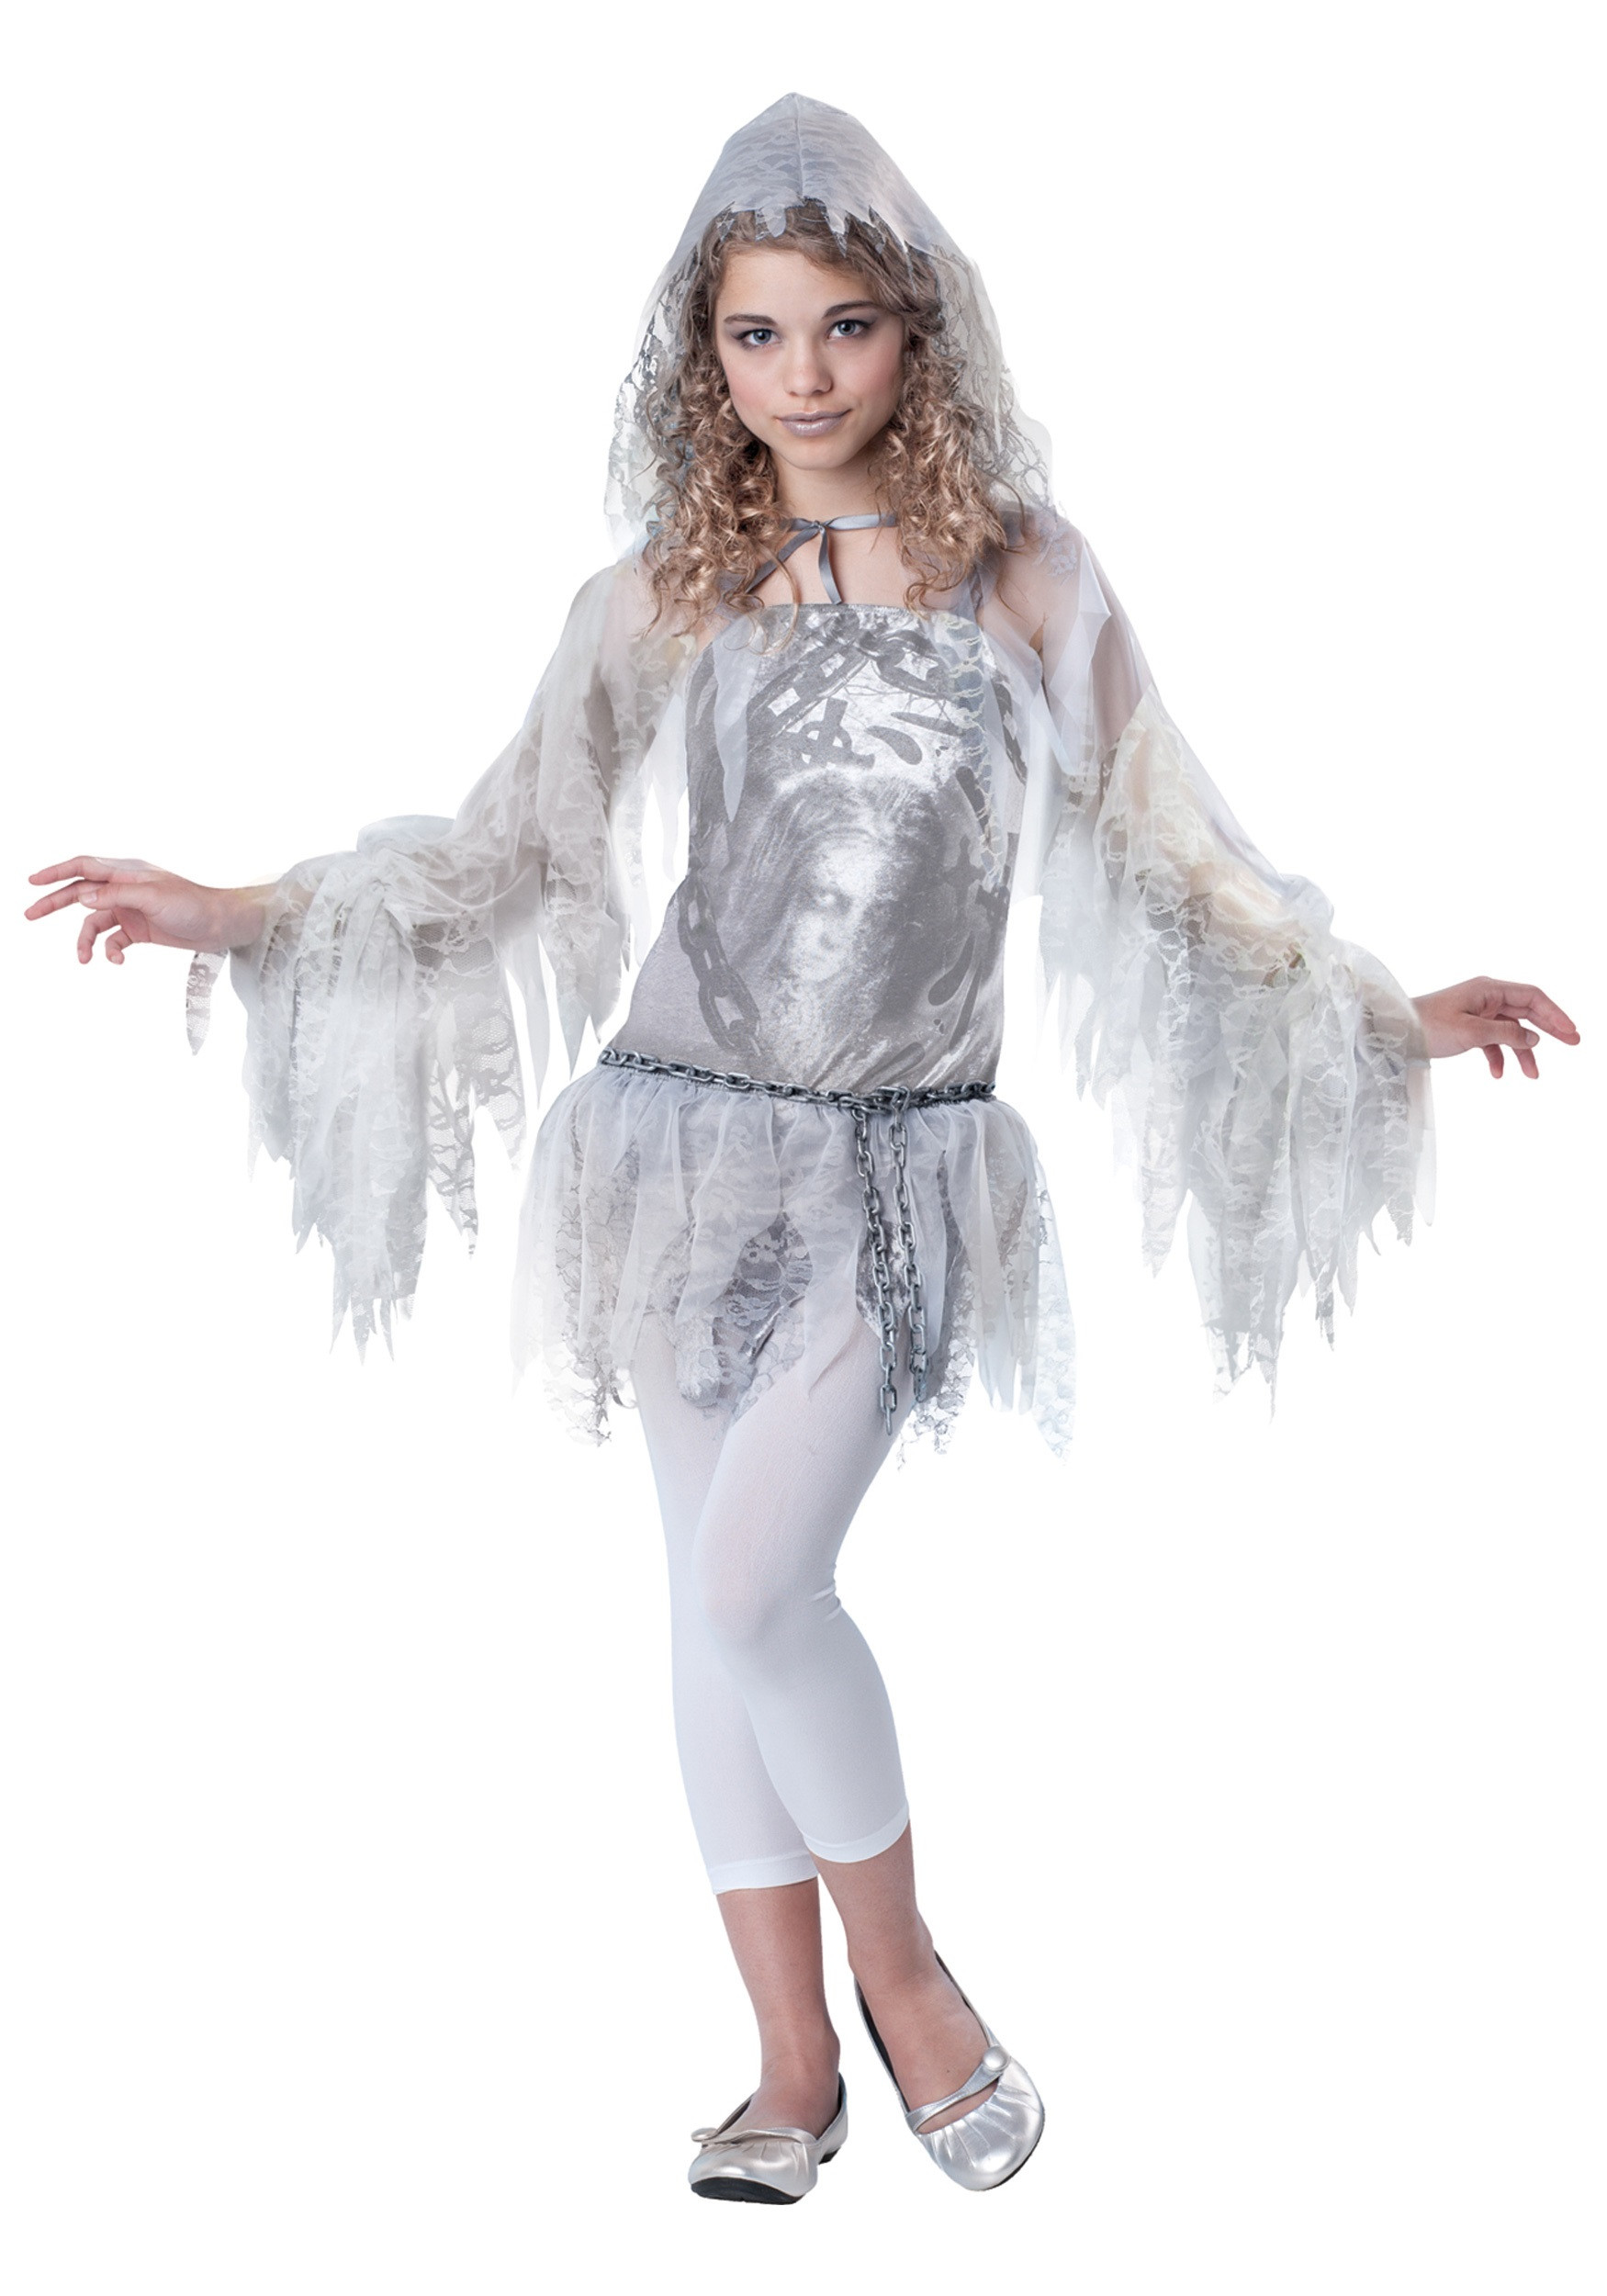 DIY Costumes For Tweens
 Tween Sassy Spirit Costume